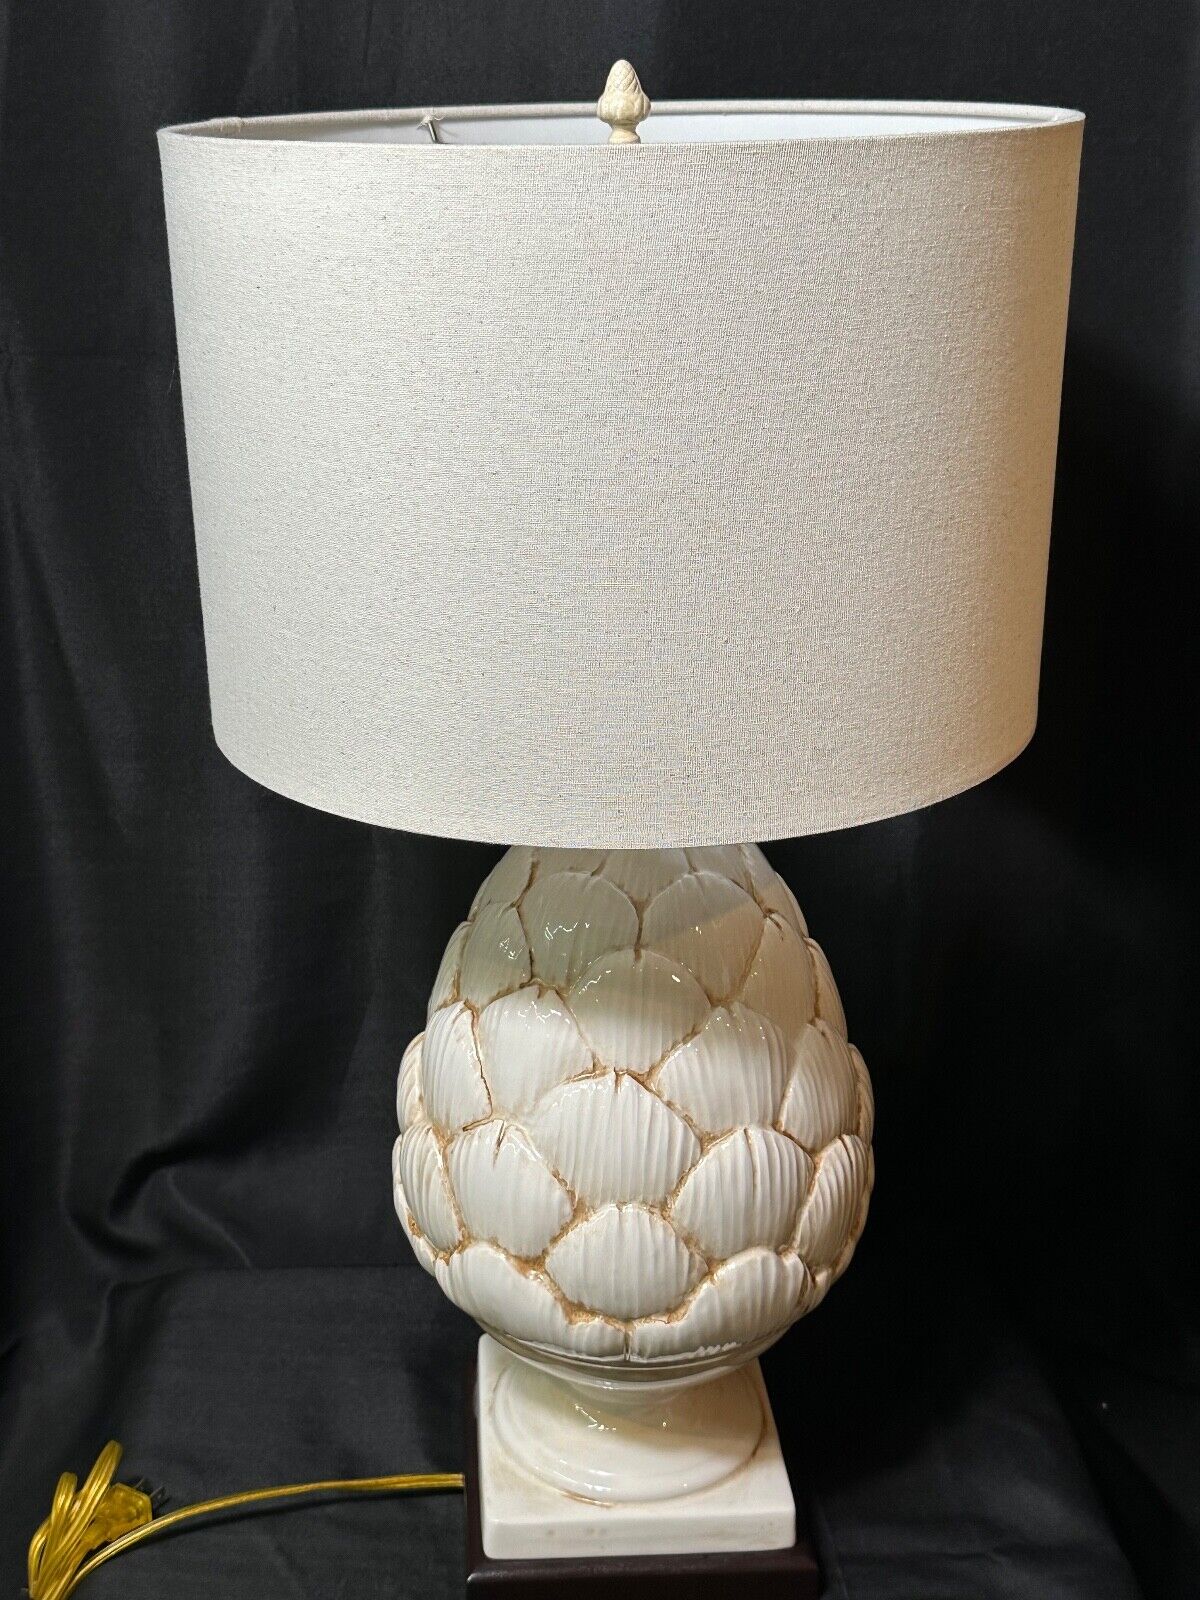 Vintage Large Ceramic Artichoke Table Lamp - Unique Home Cottage Decor Lighting